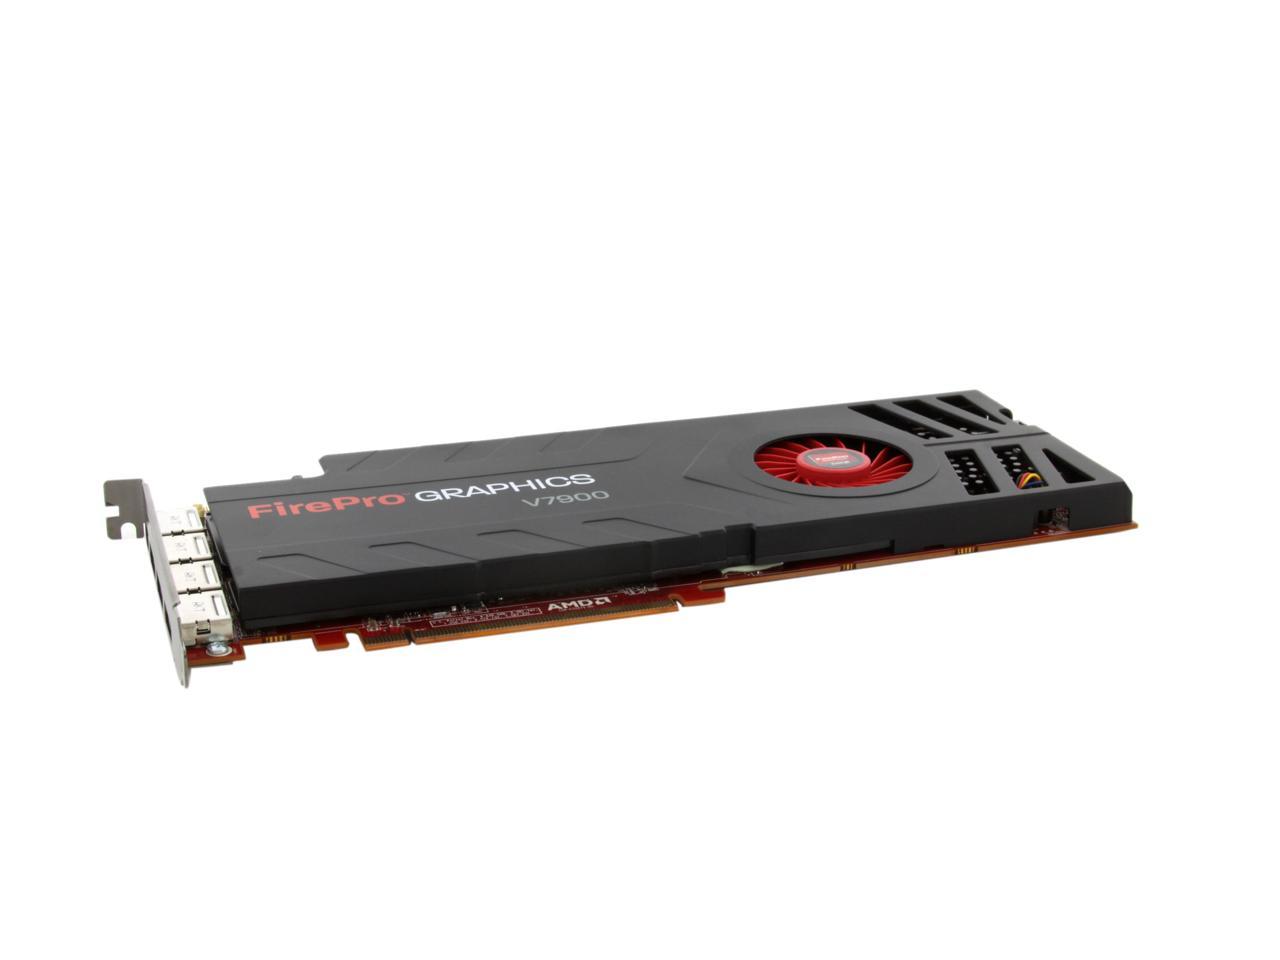 AMD FirePro V7900 100-505861 2GB 256-bit GDDR5 PCI Express 